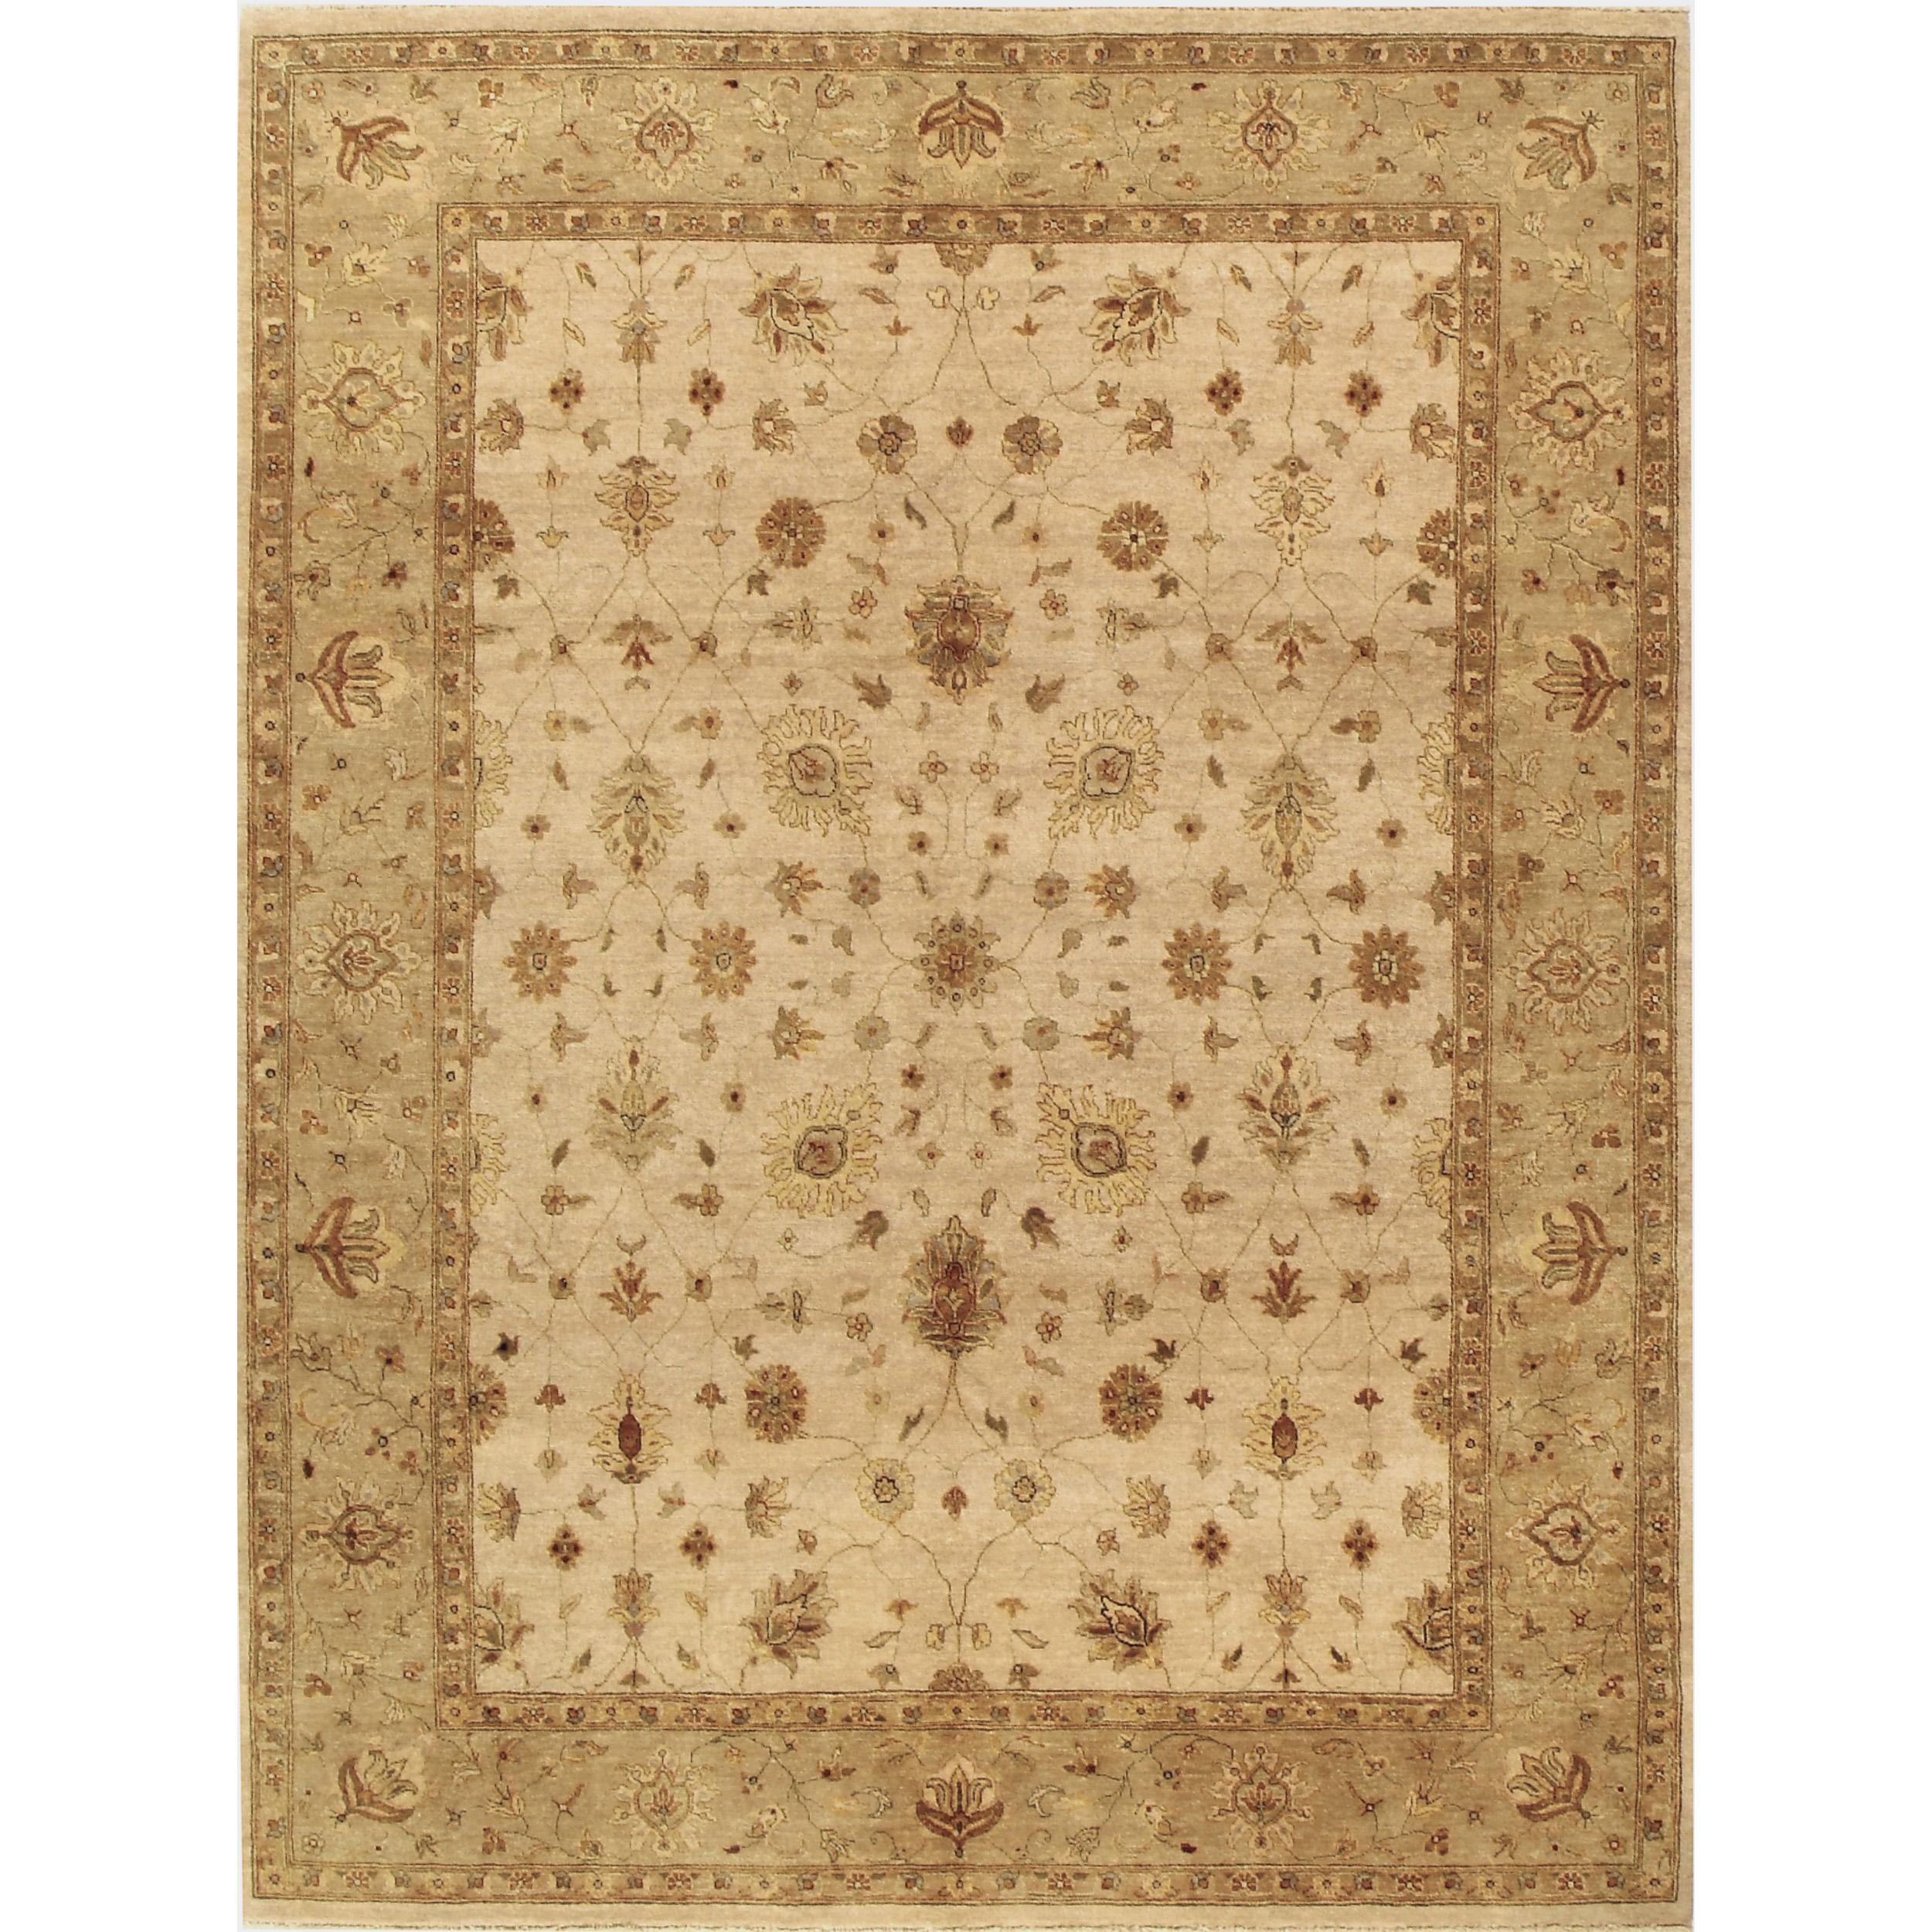 Le tapis est méticuleusement fabriqué à l'aide des techniques de tissage traditionnelles les plus complexes, guidées par l'expertise d'artisans qualifiés. Chaque tapis est un travail d'amour, les tisseurs à la main consacrant d'innombrables heures,